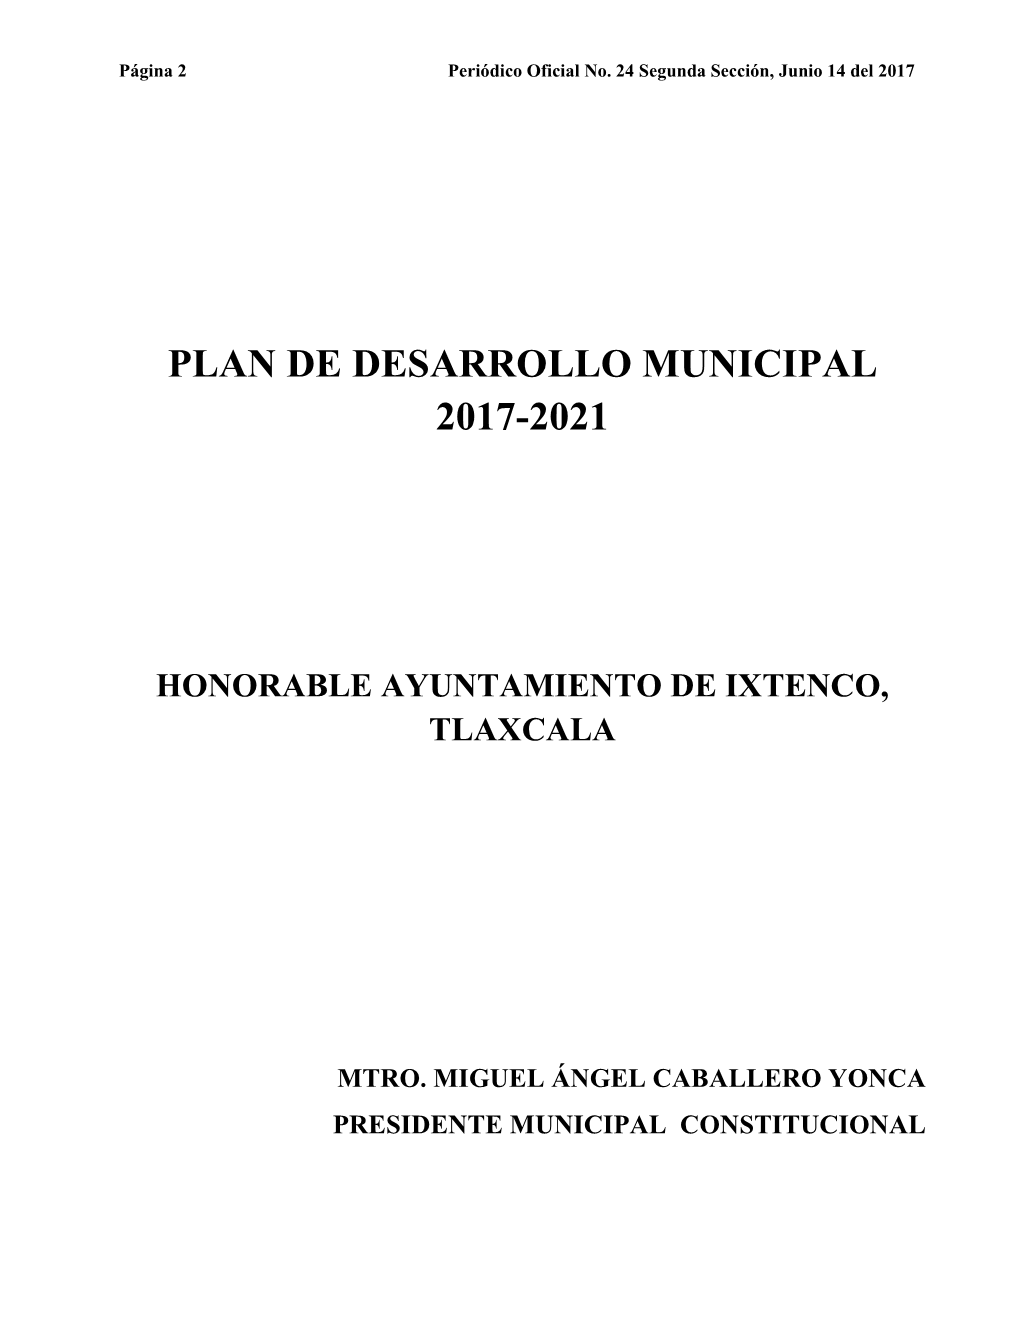 Plan De Desarrollo Municipal 2017-2021